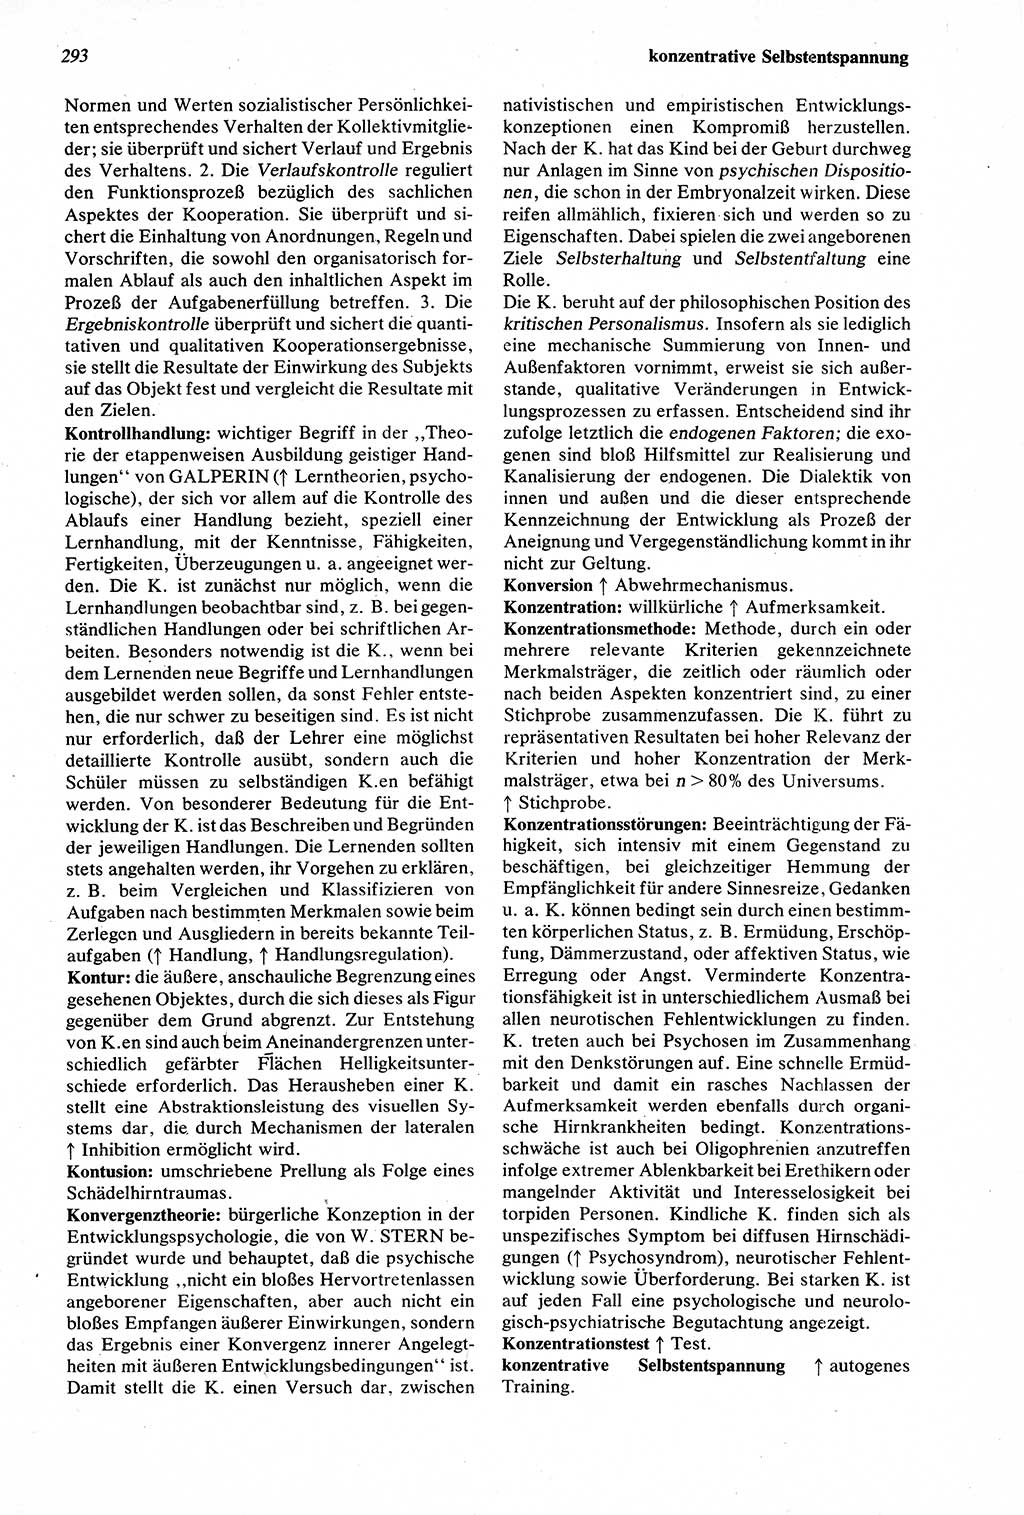 Wörterbuch der Psychologie [Deutsche Demokratische Republik (DDR)] 1976, Seite 293 (Wb. Psych. DDR 1976, S. 293)